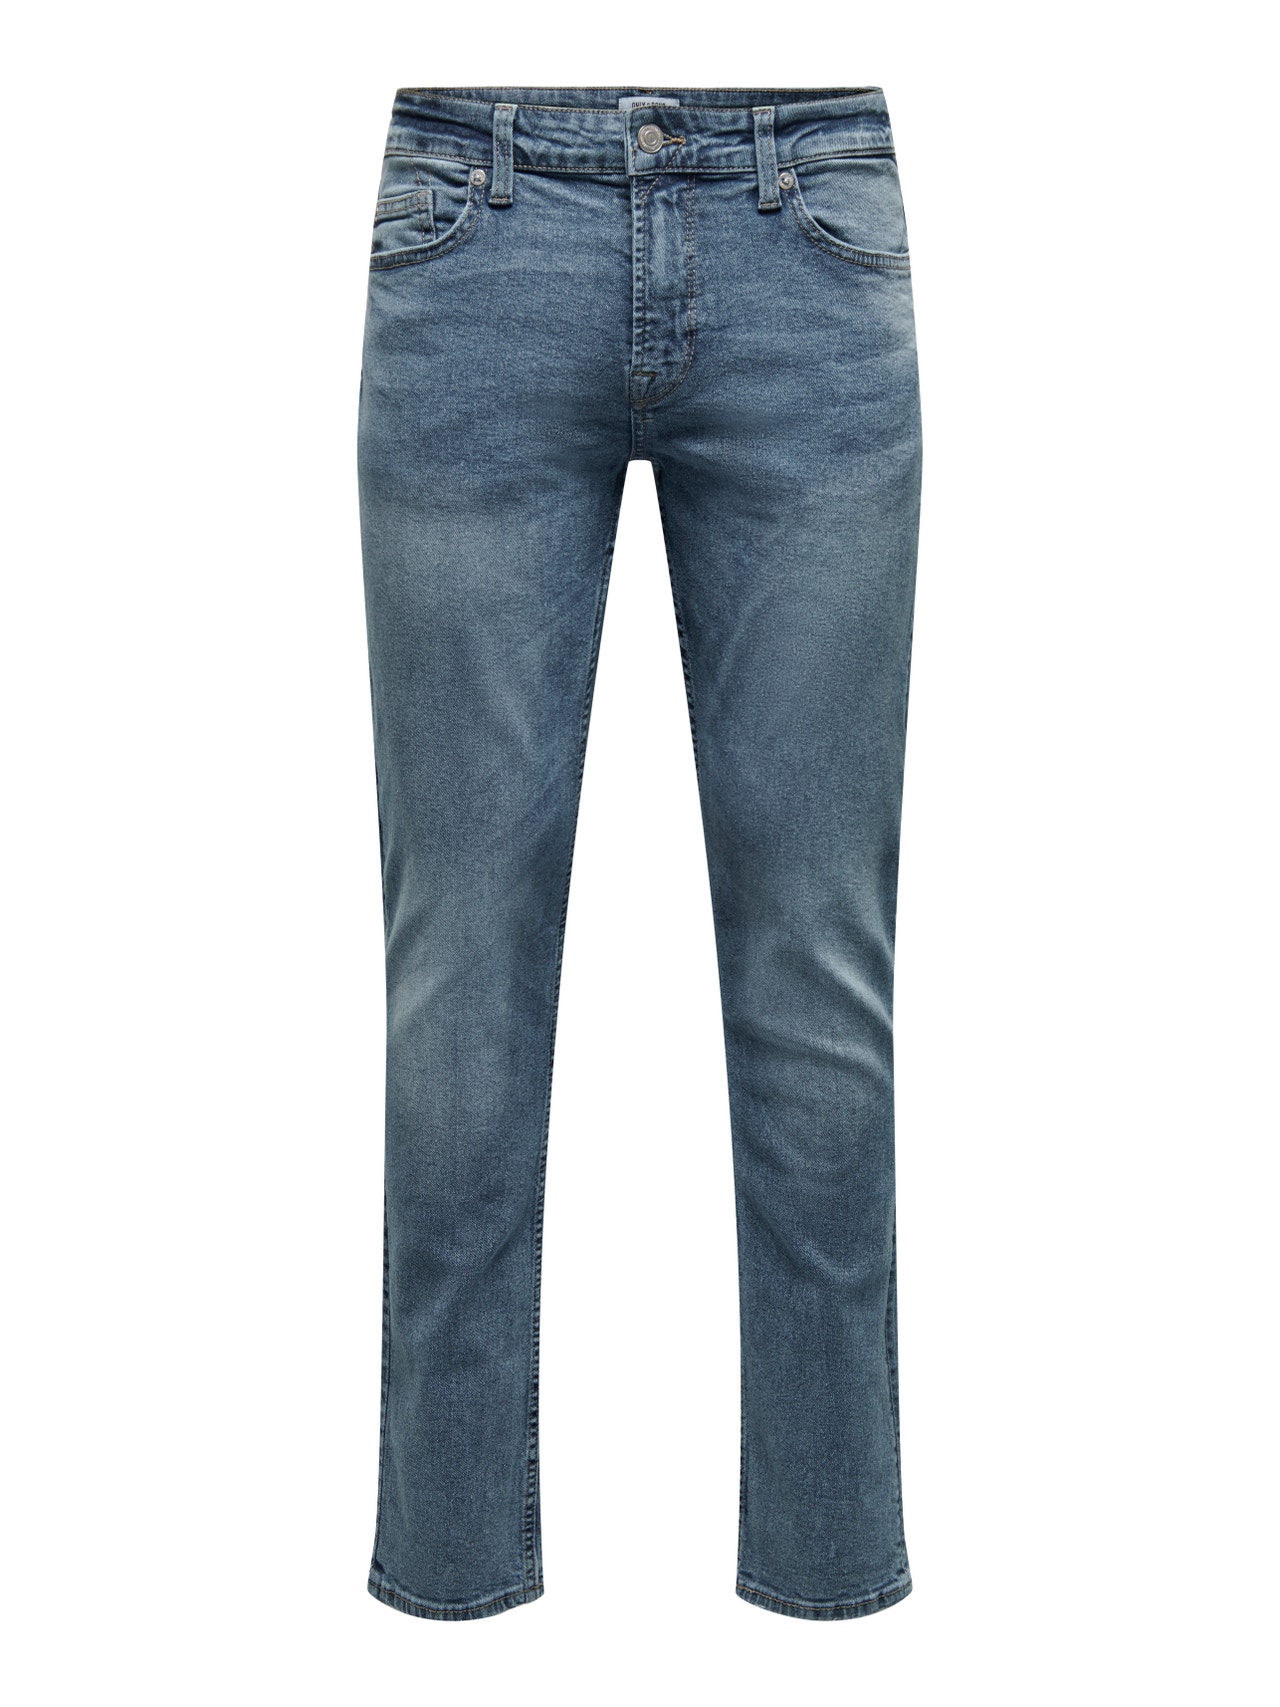 ONLY & SONS Jeans Slim Fit -Light Blue Denim - 22024594